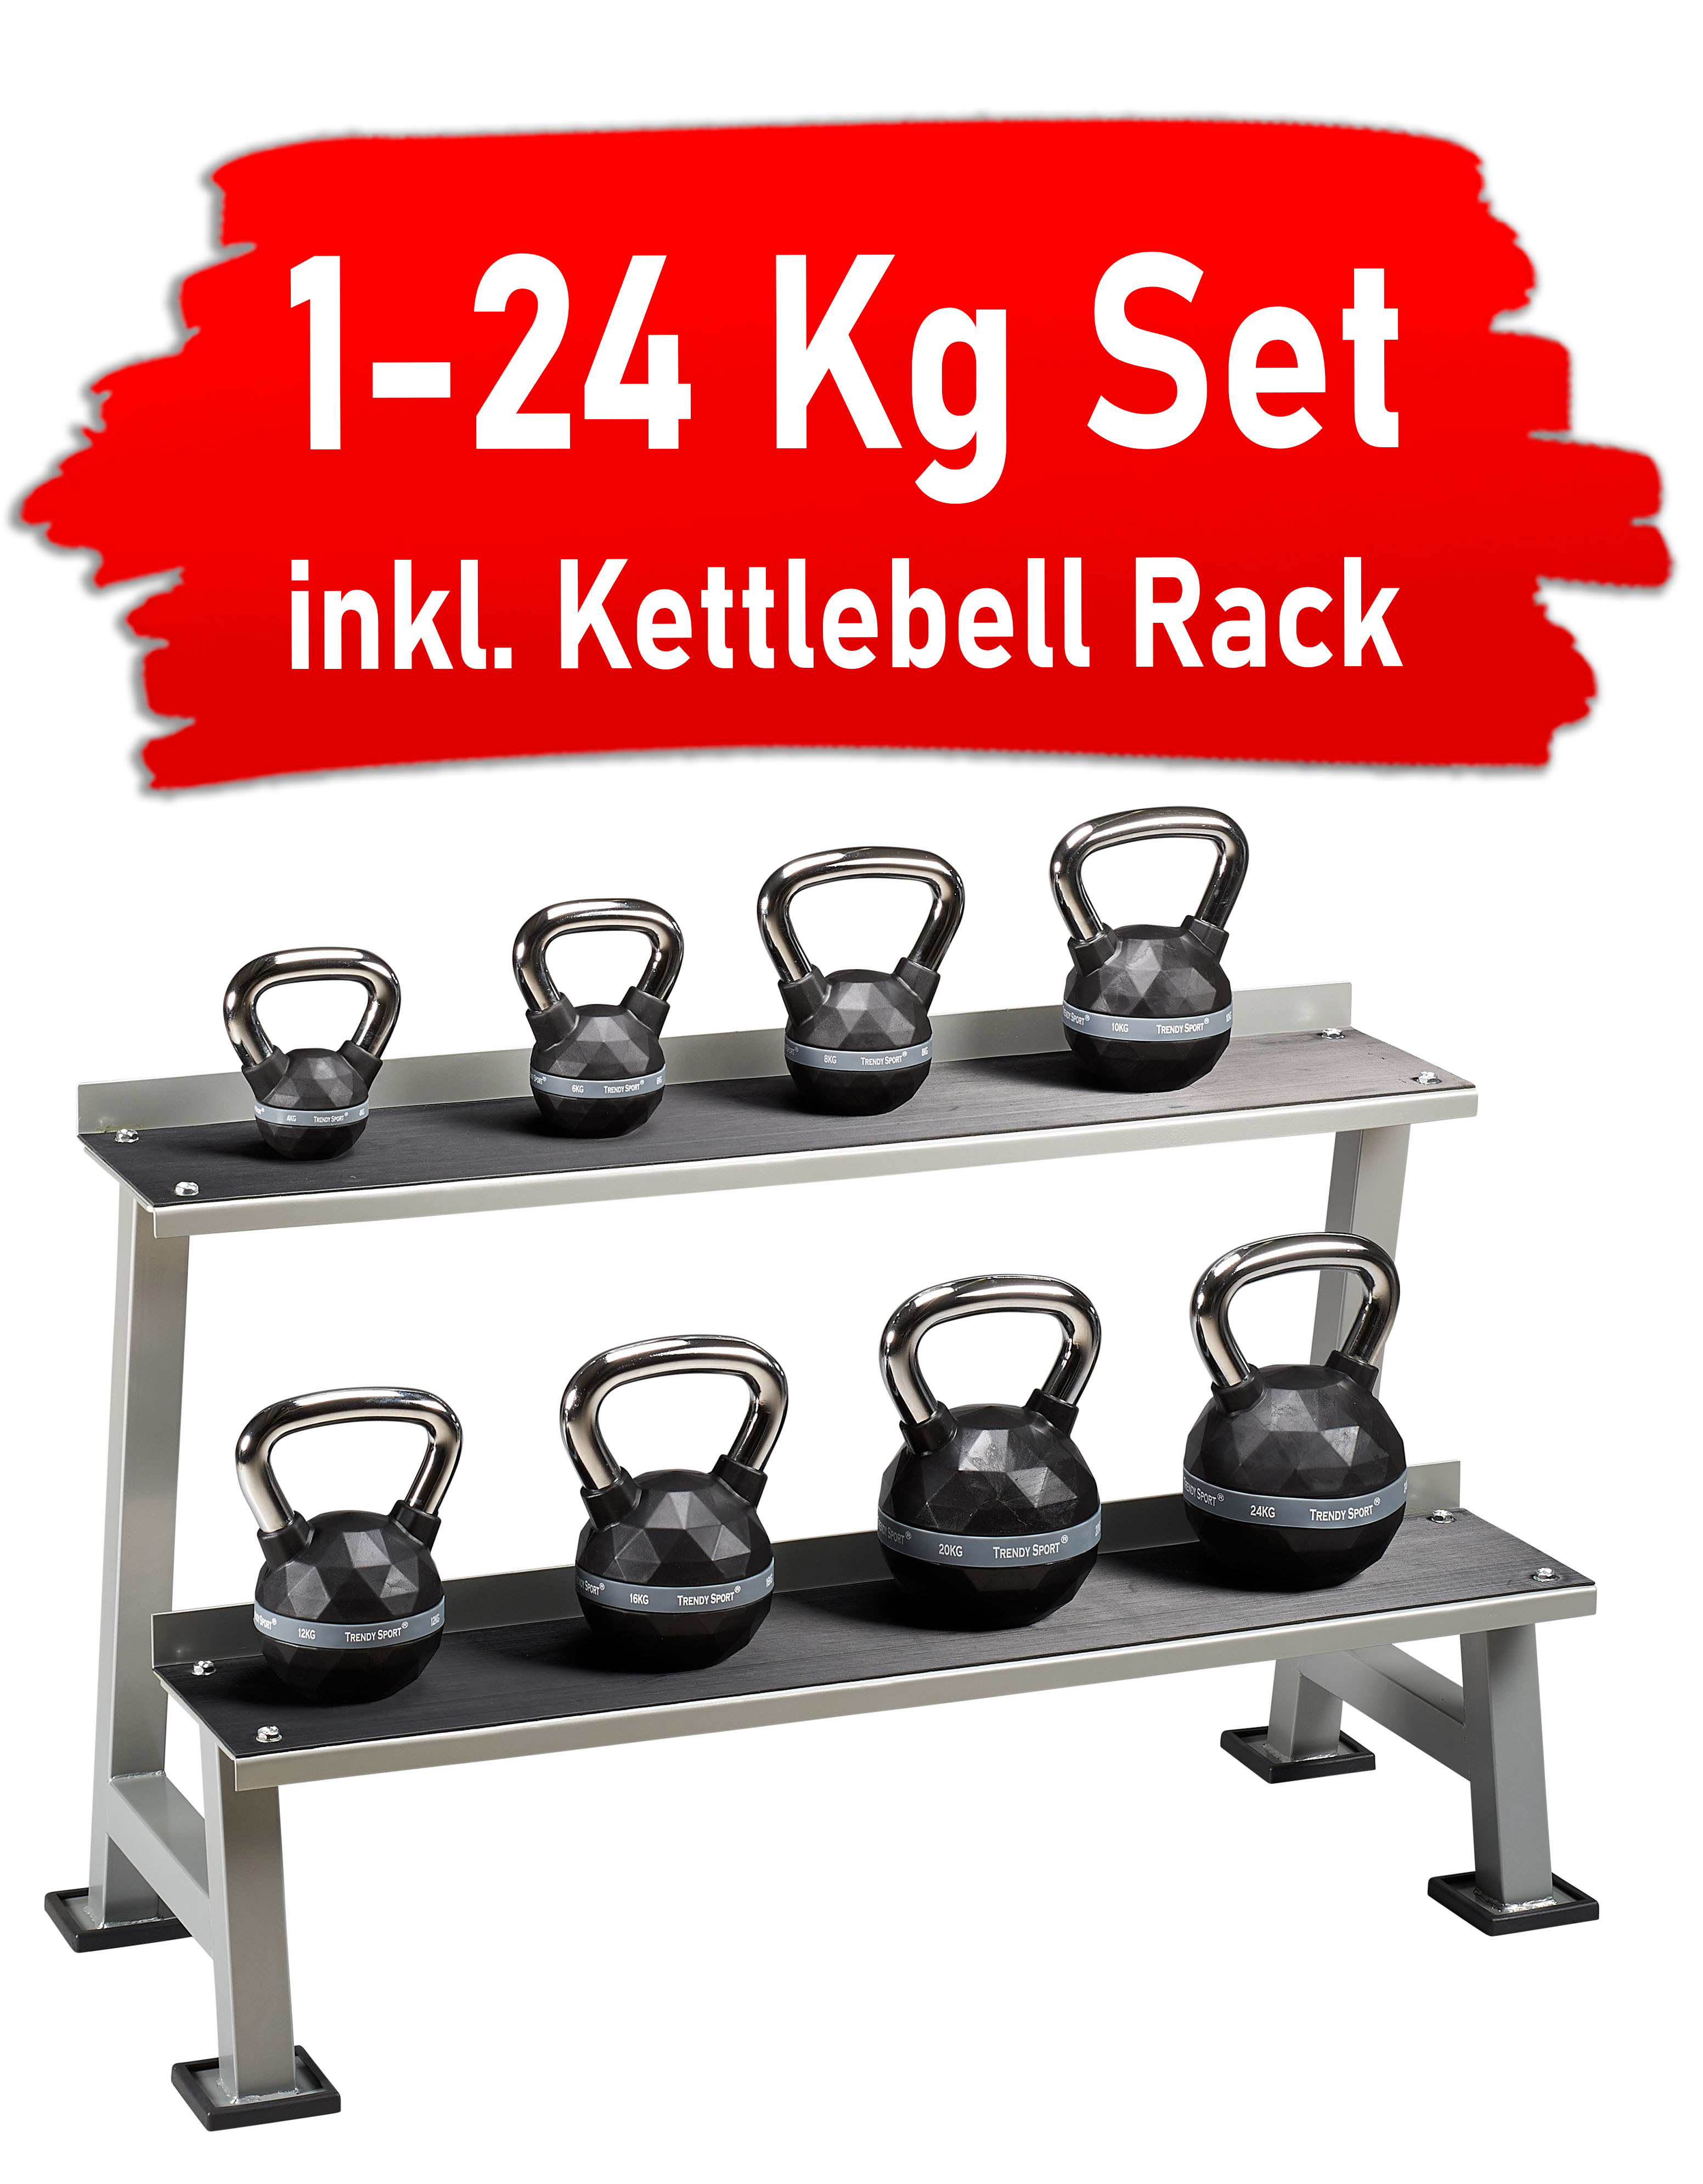 1-24 Kg Exklusiv Kettlebell Set inkl. Kettlebell Rack